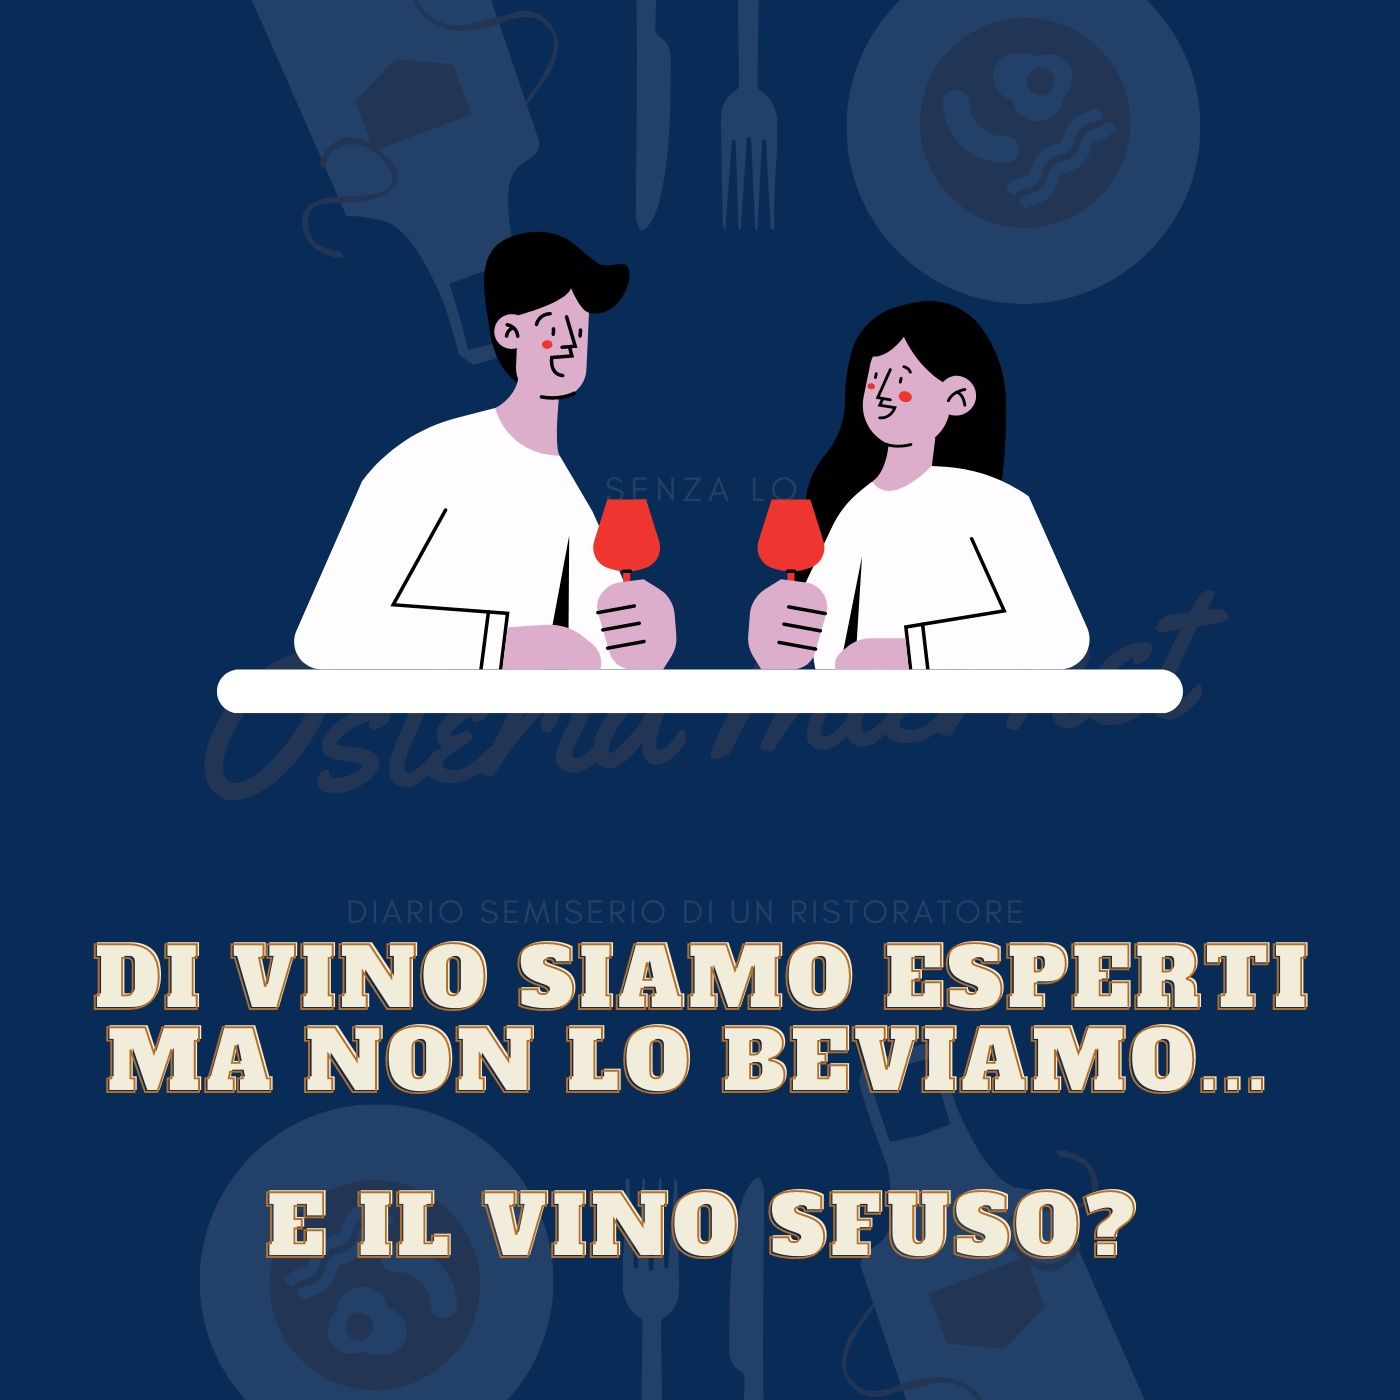 Di Vino siamo esperti ma non lo beviamo... e il vino sfuso?